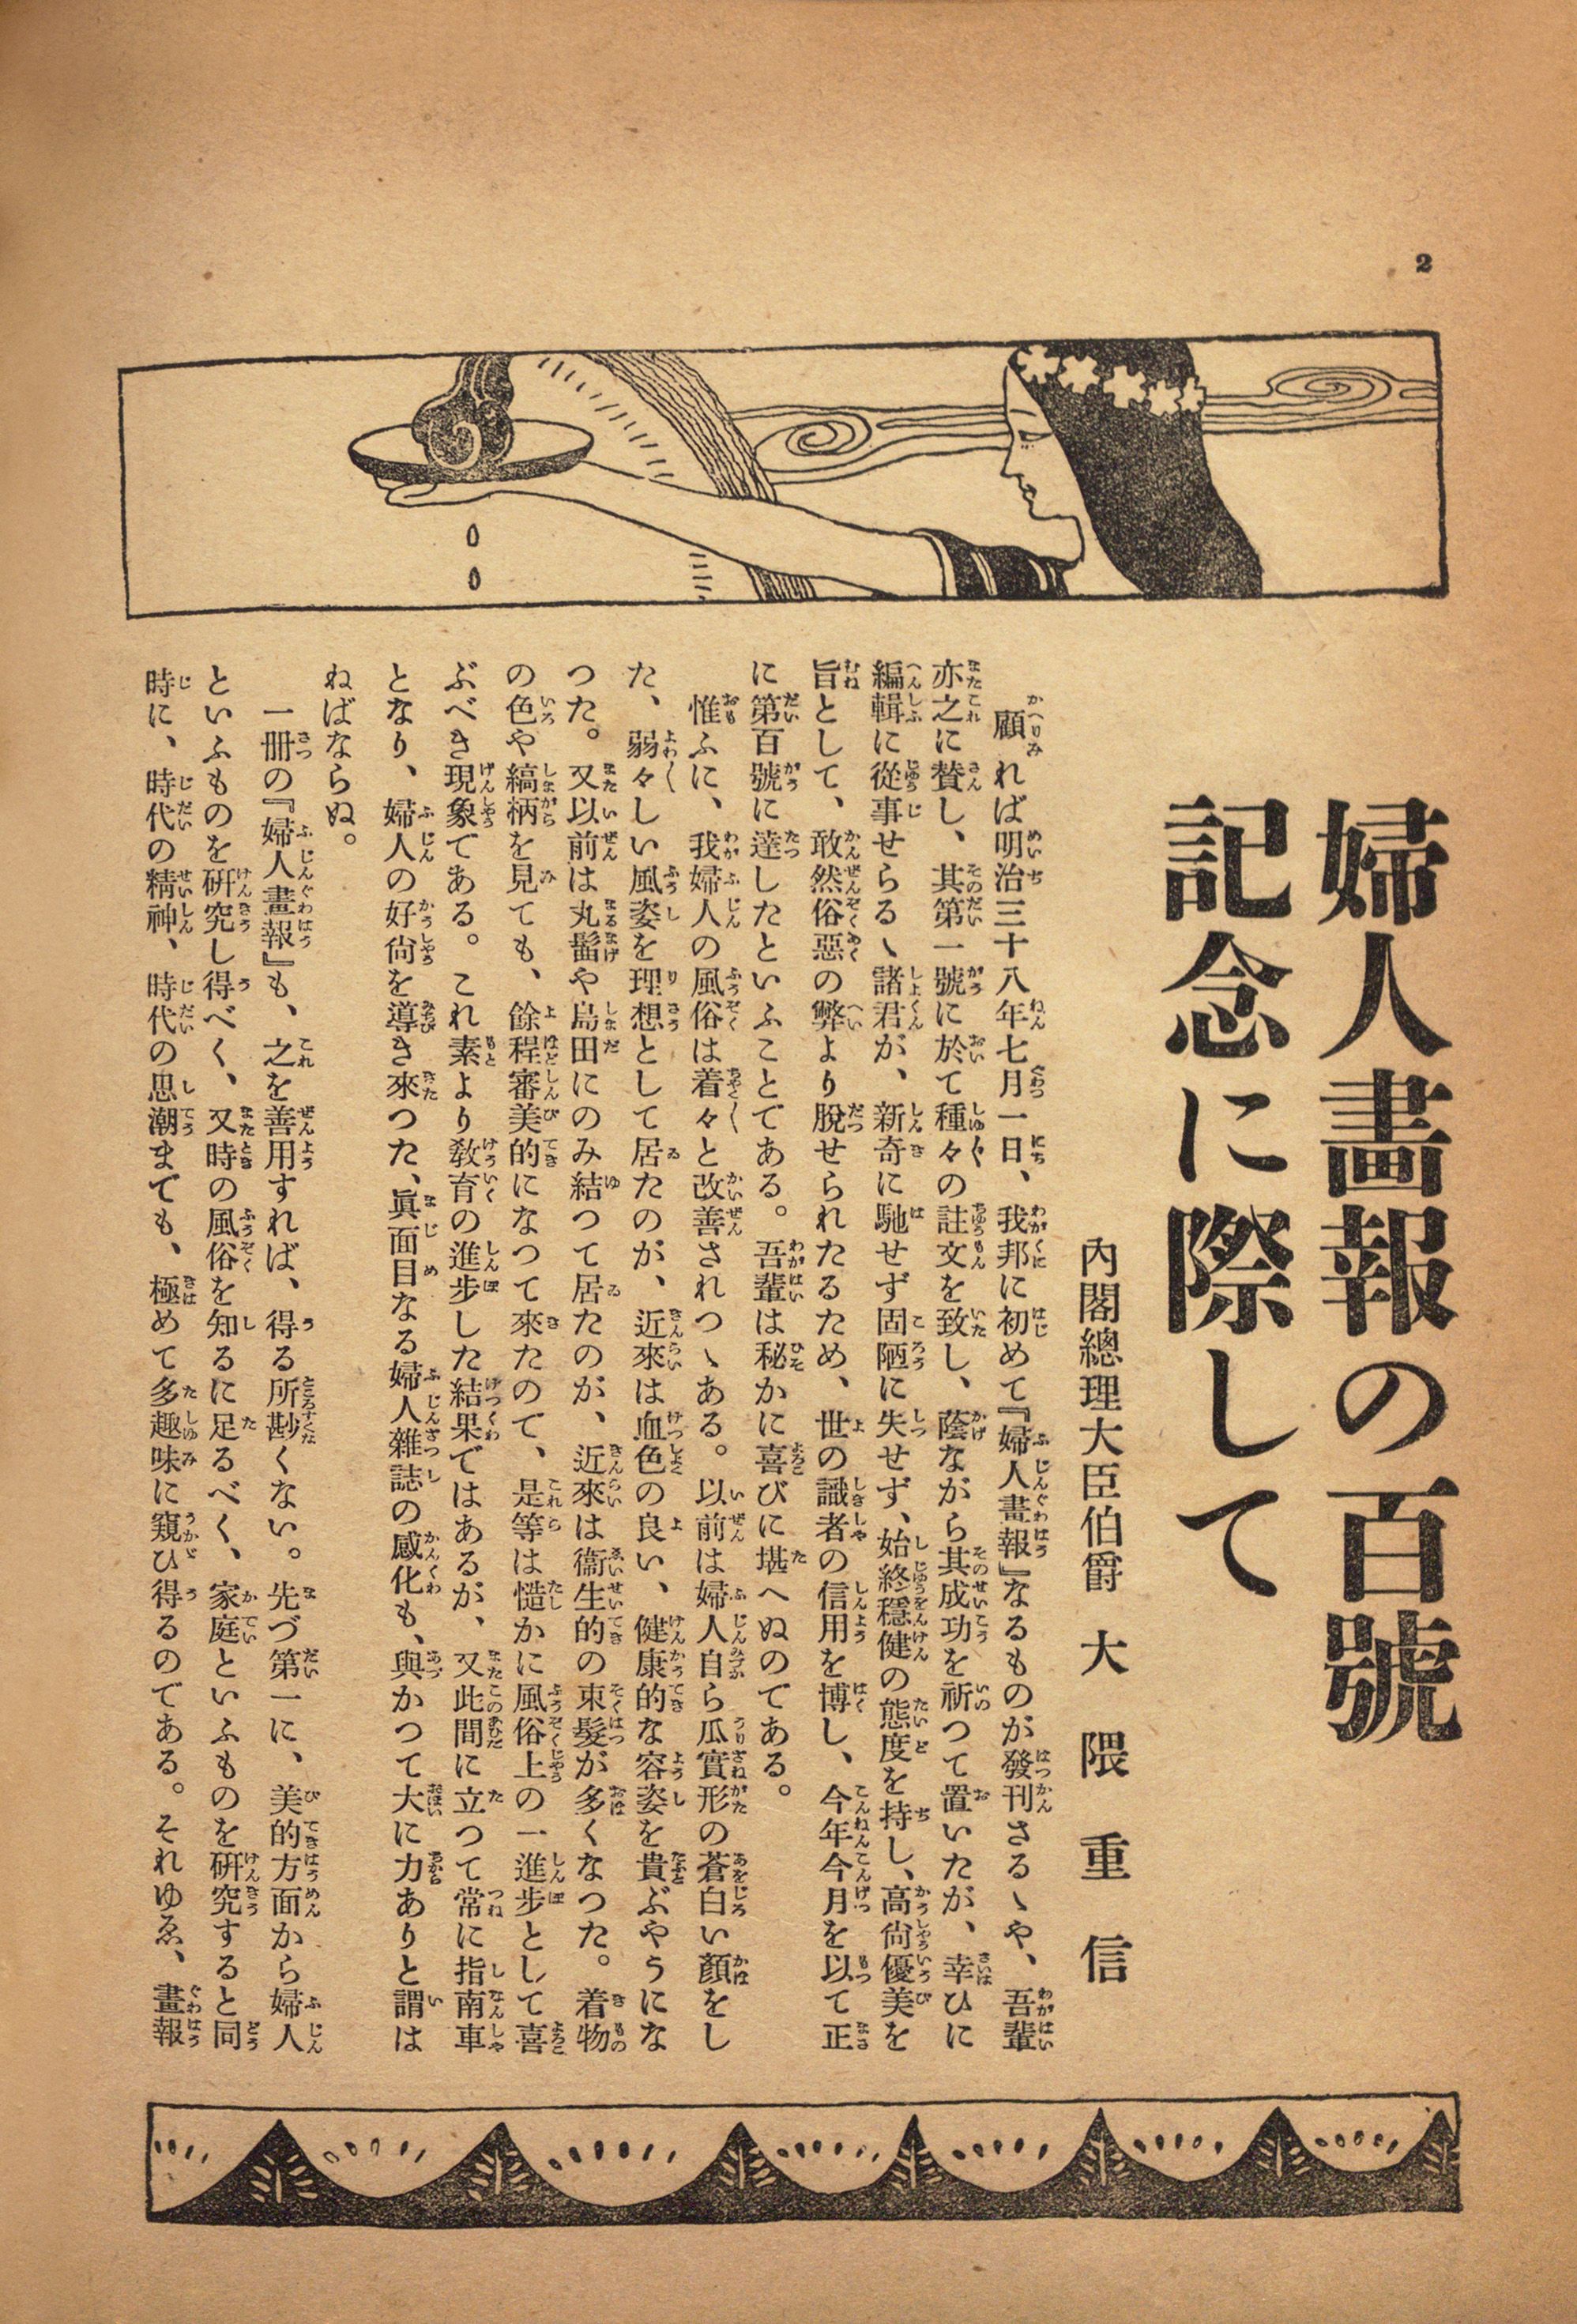 渋沢栄一の上司、大隈重信は『婦人画報』と深い関係を持っていました